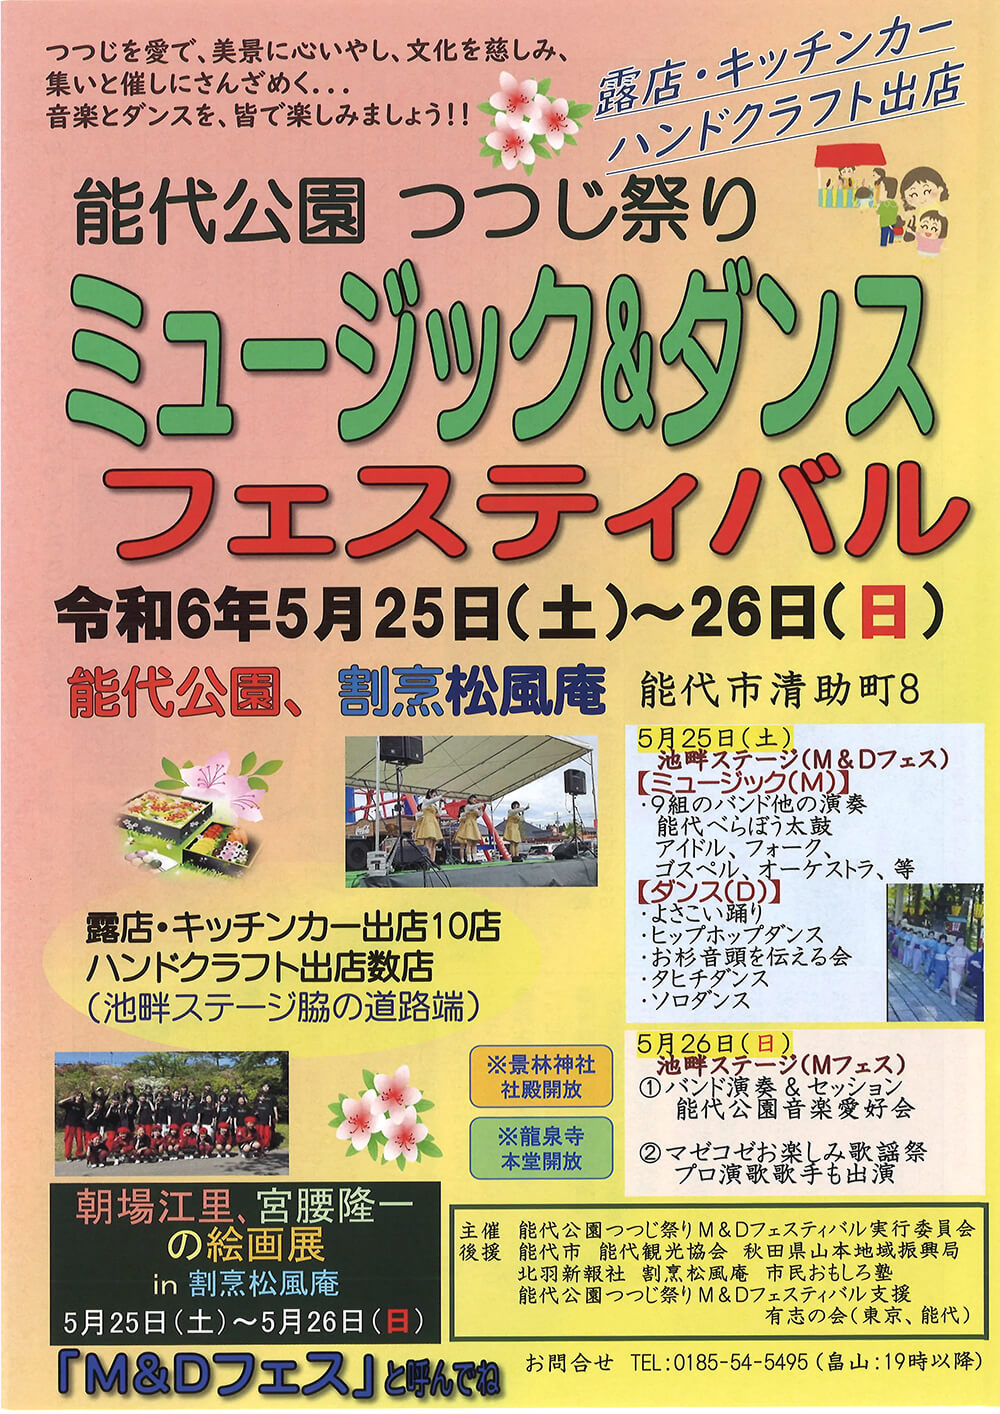 能代公園 つつじ祭り ミュージック&ダンス フェスティバル チラシ1